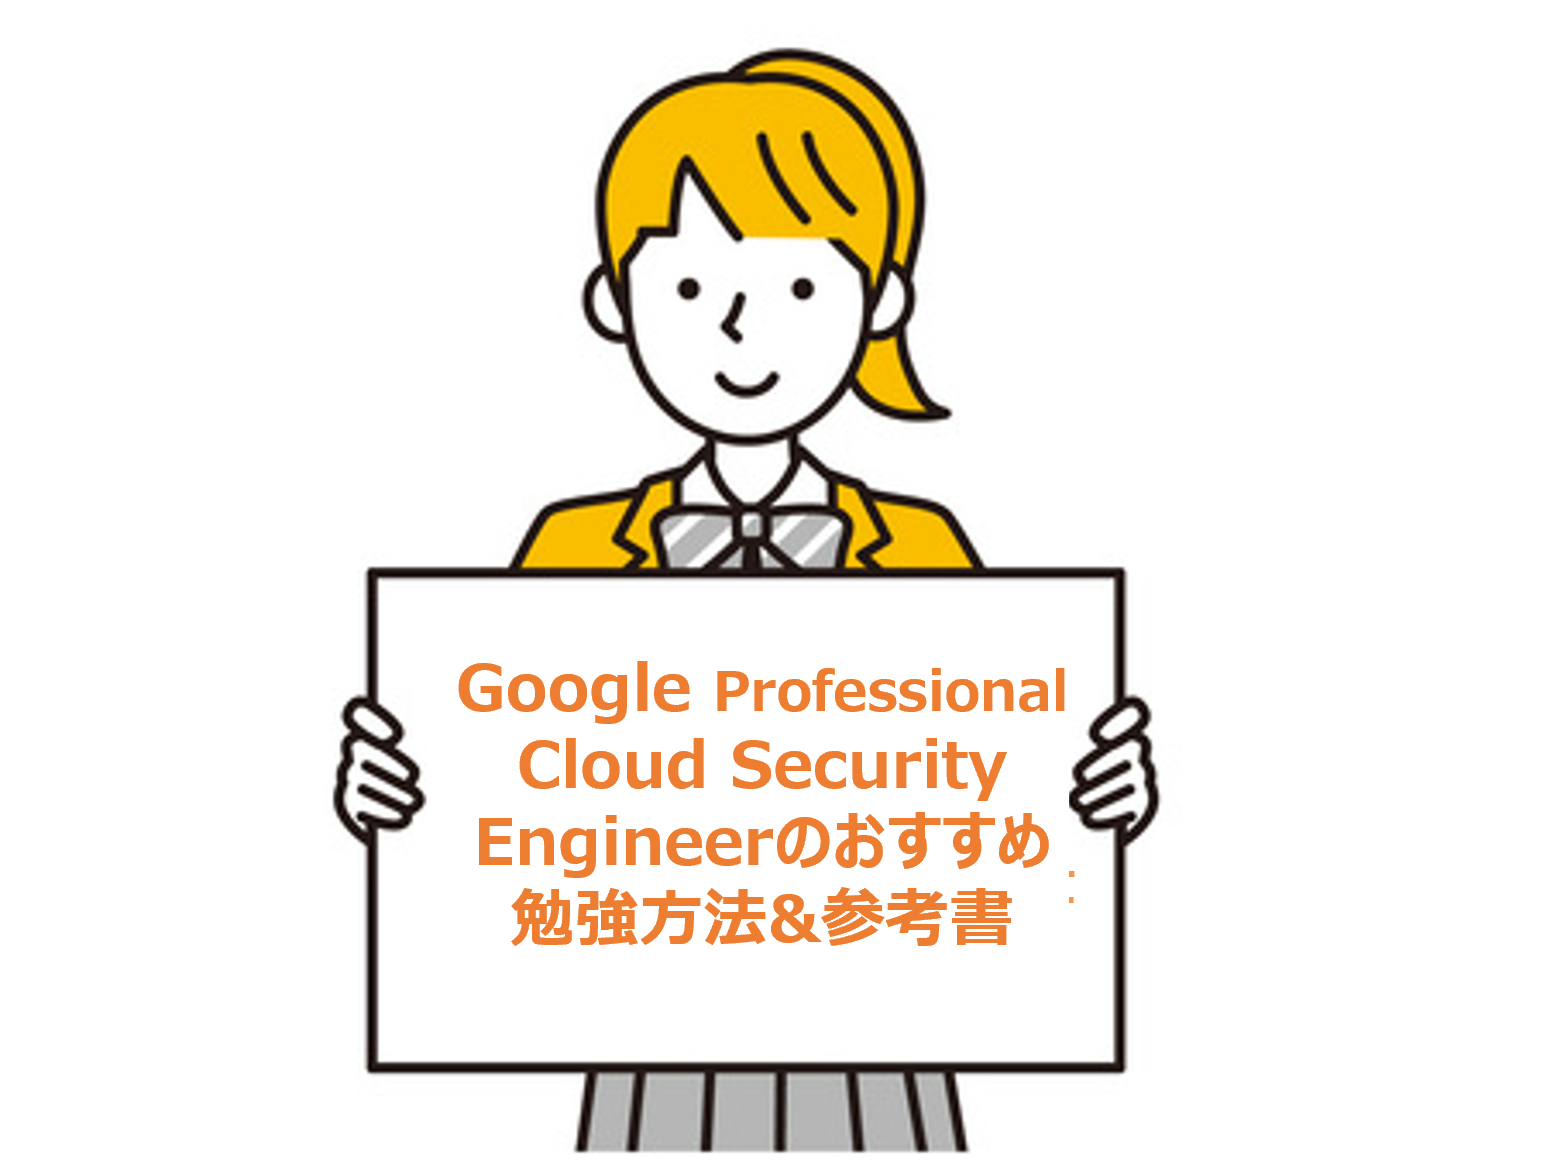 【合格】Google Professional Cloud Security Engineerのおすすめ勉強方法&参考書